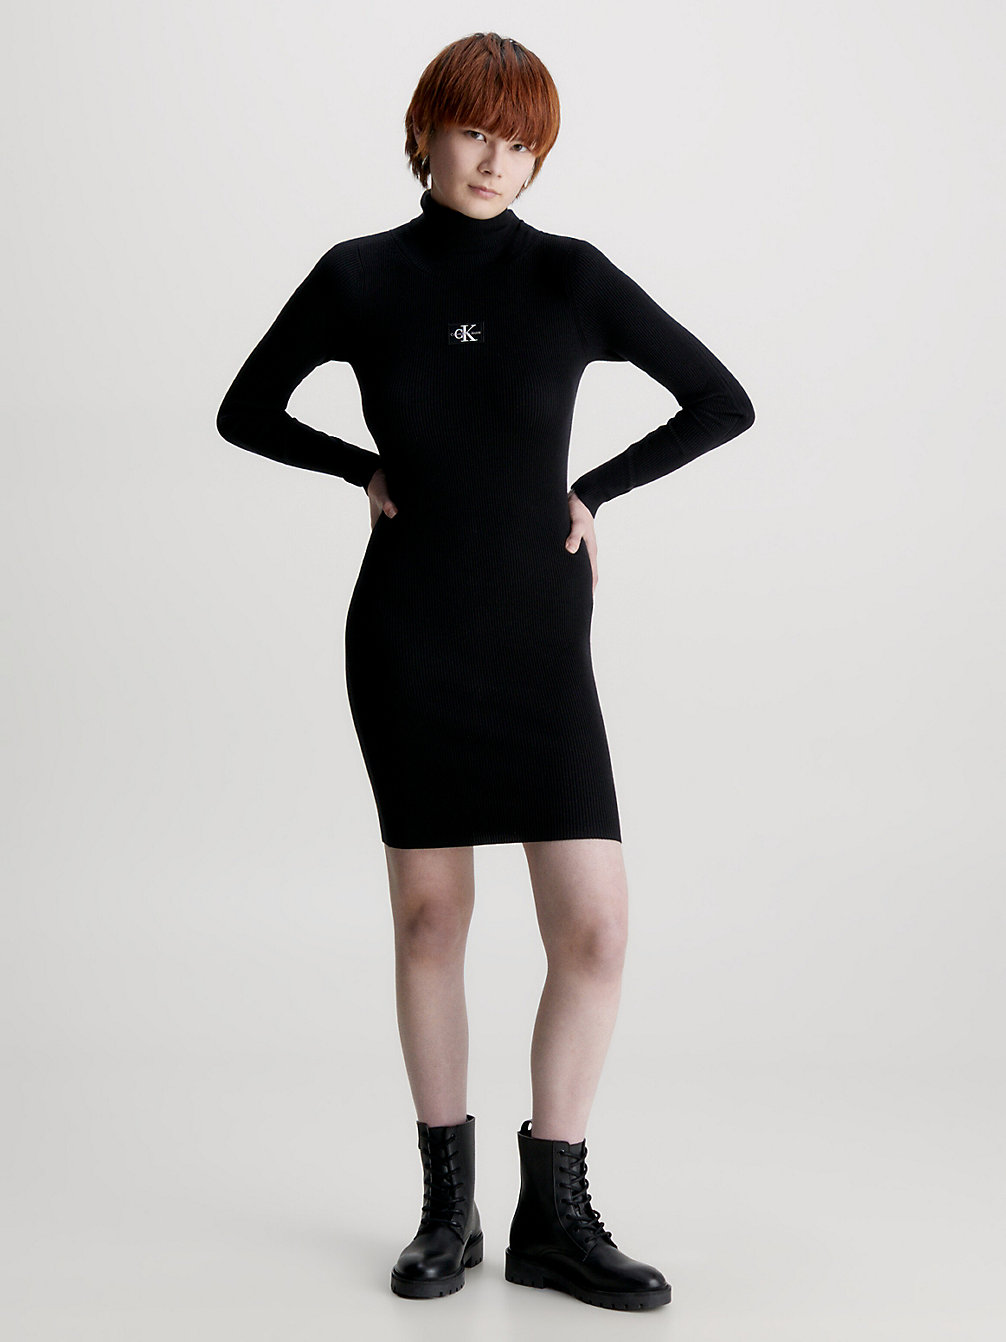 CK BLACK Slim Roll Neck Jumper Dress undefined women Calvin Klein